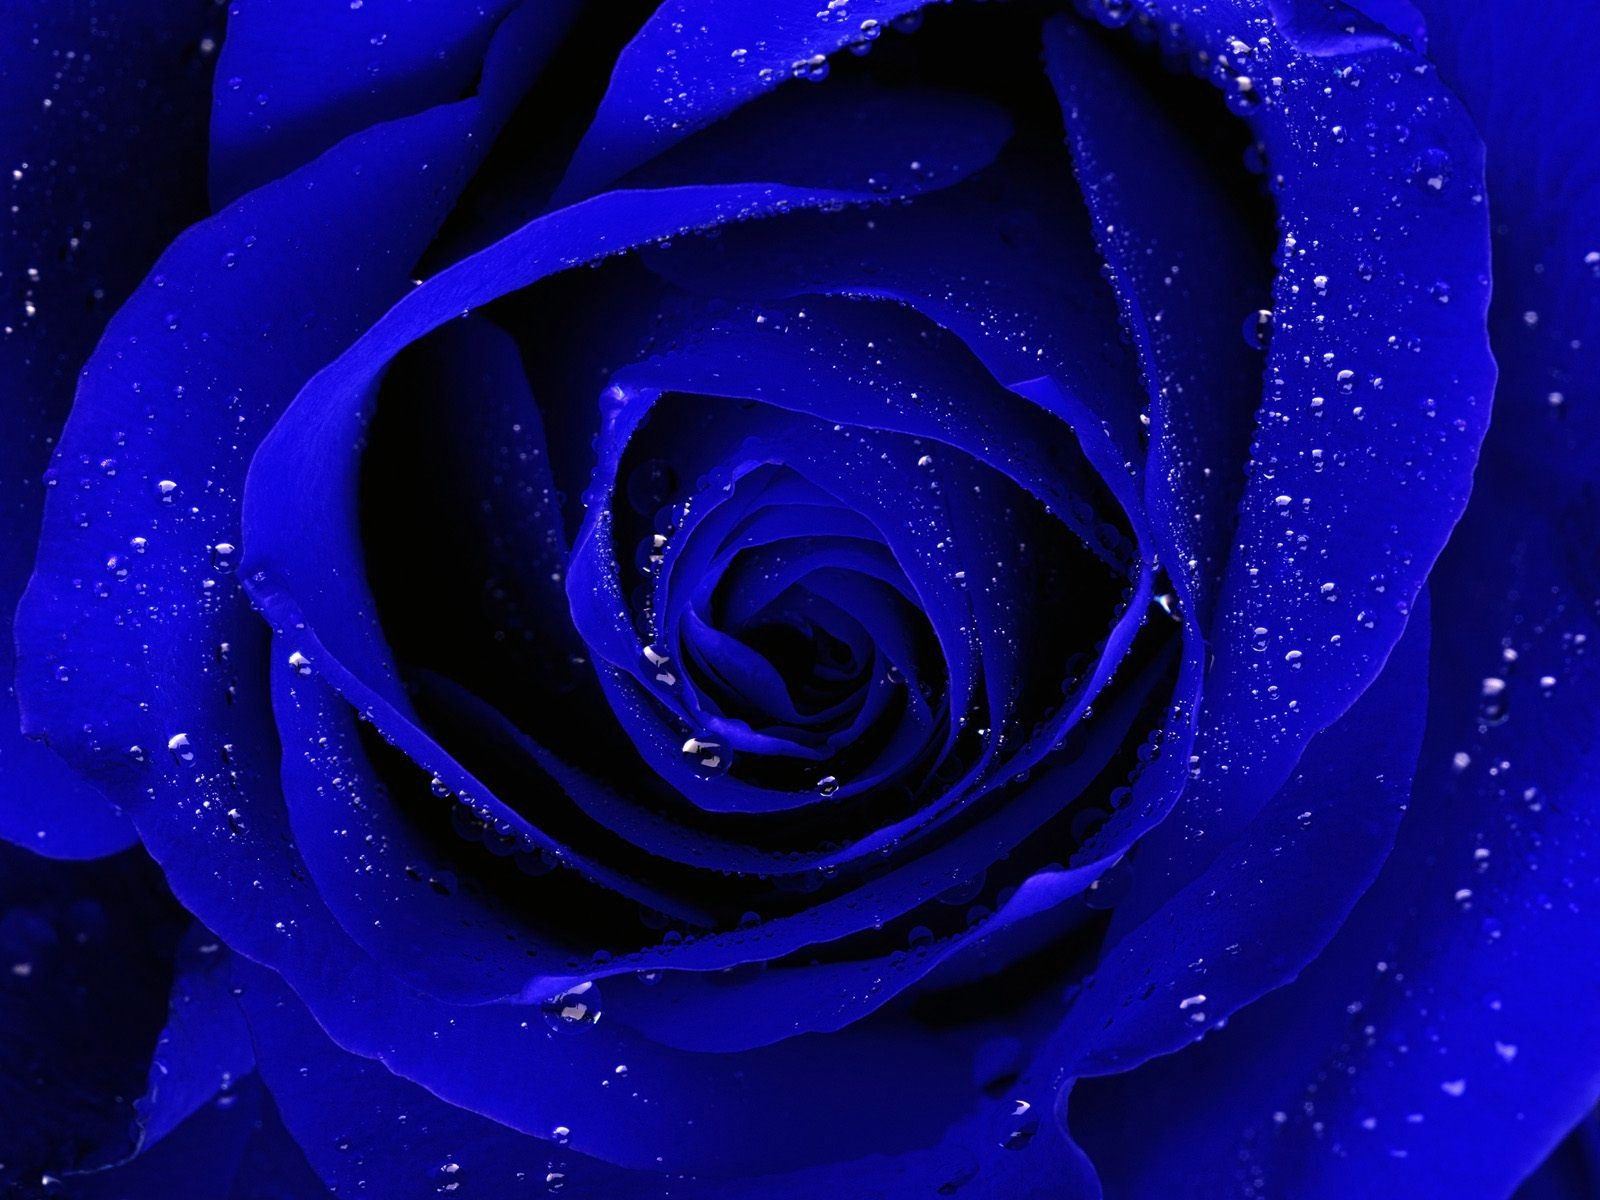 Blue Rose Desktop Wallpaper, Blue Rose Images Free Cool Backgrounds